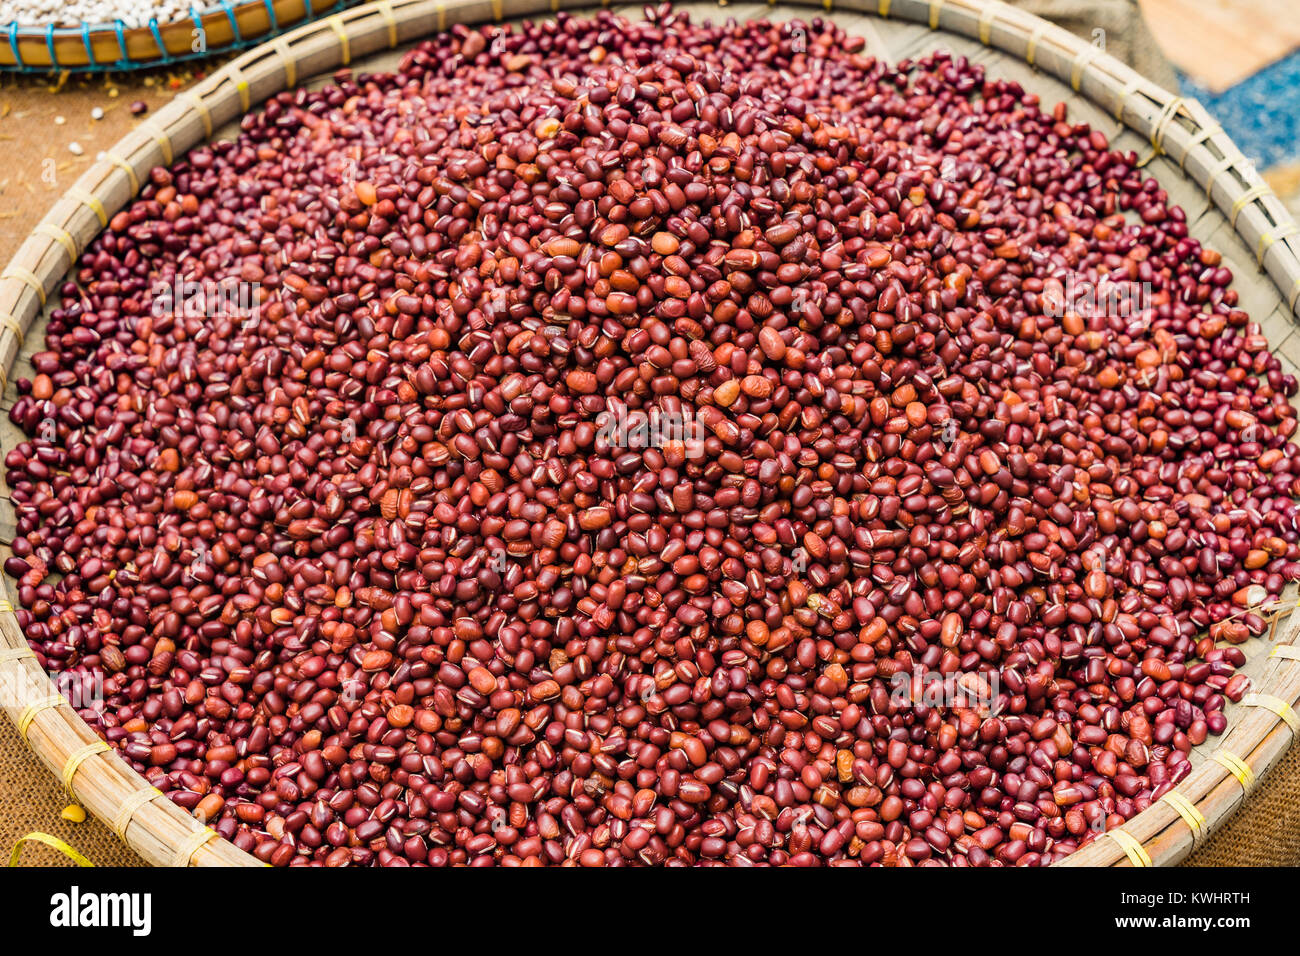 Les haricots rouges dans panier, vue du dessus de grains entiers haricots rouges sur la table en bois historique Banque D'Images